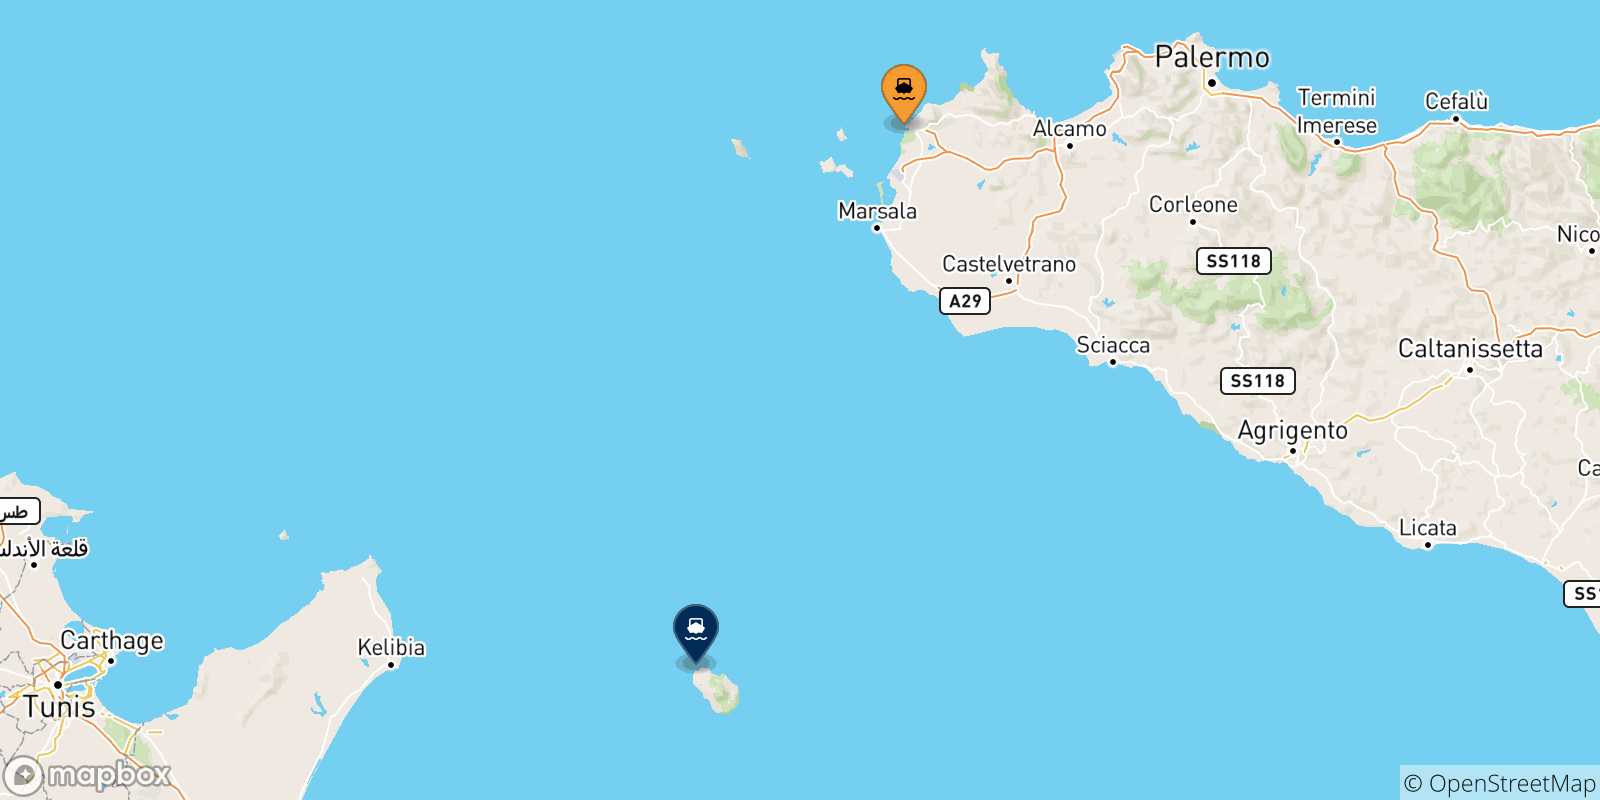 Mappa delle possibili rotte tra l'Italia e l'Isola Di Pantelleria